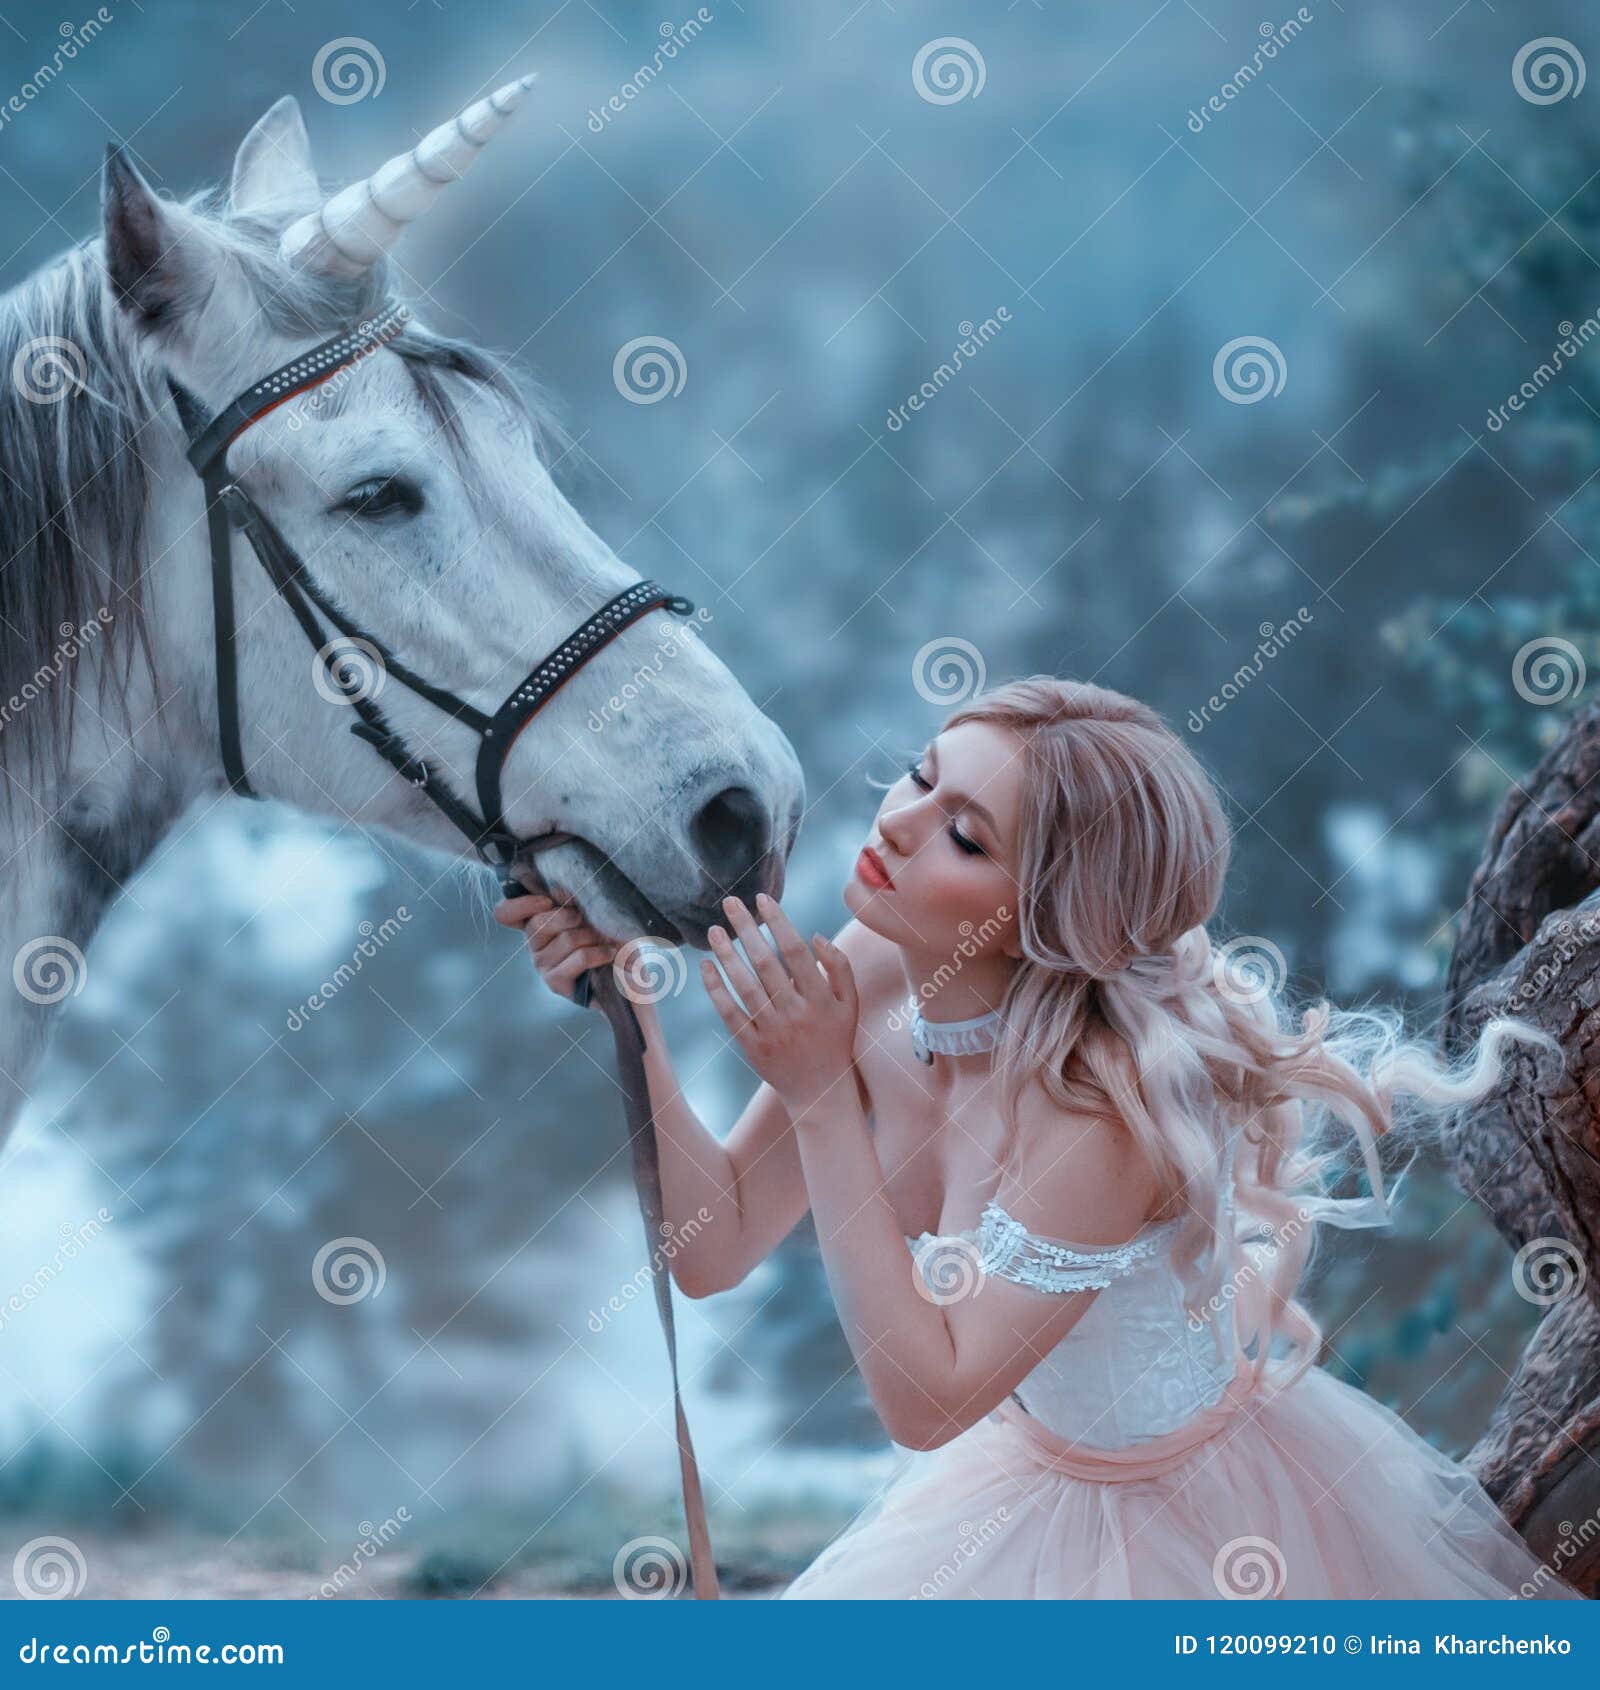 Résultat de recherche d'images pour "fantastique femme cheval"